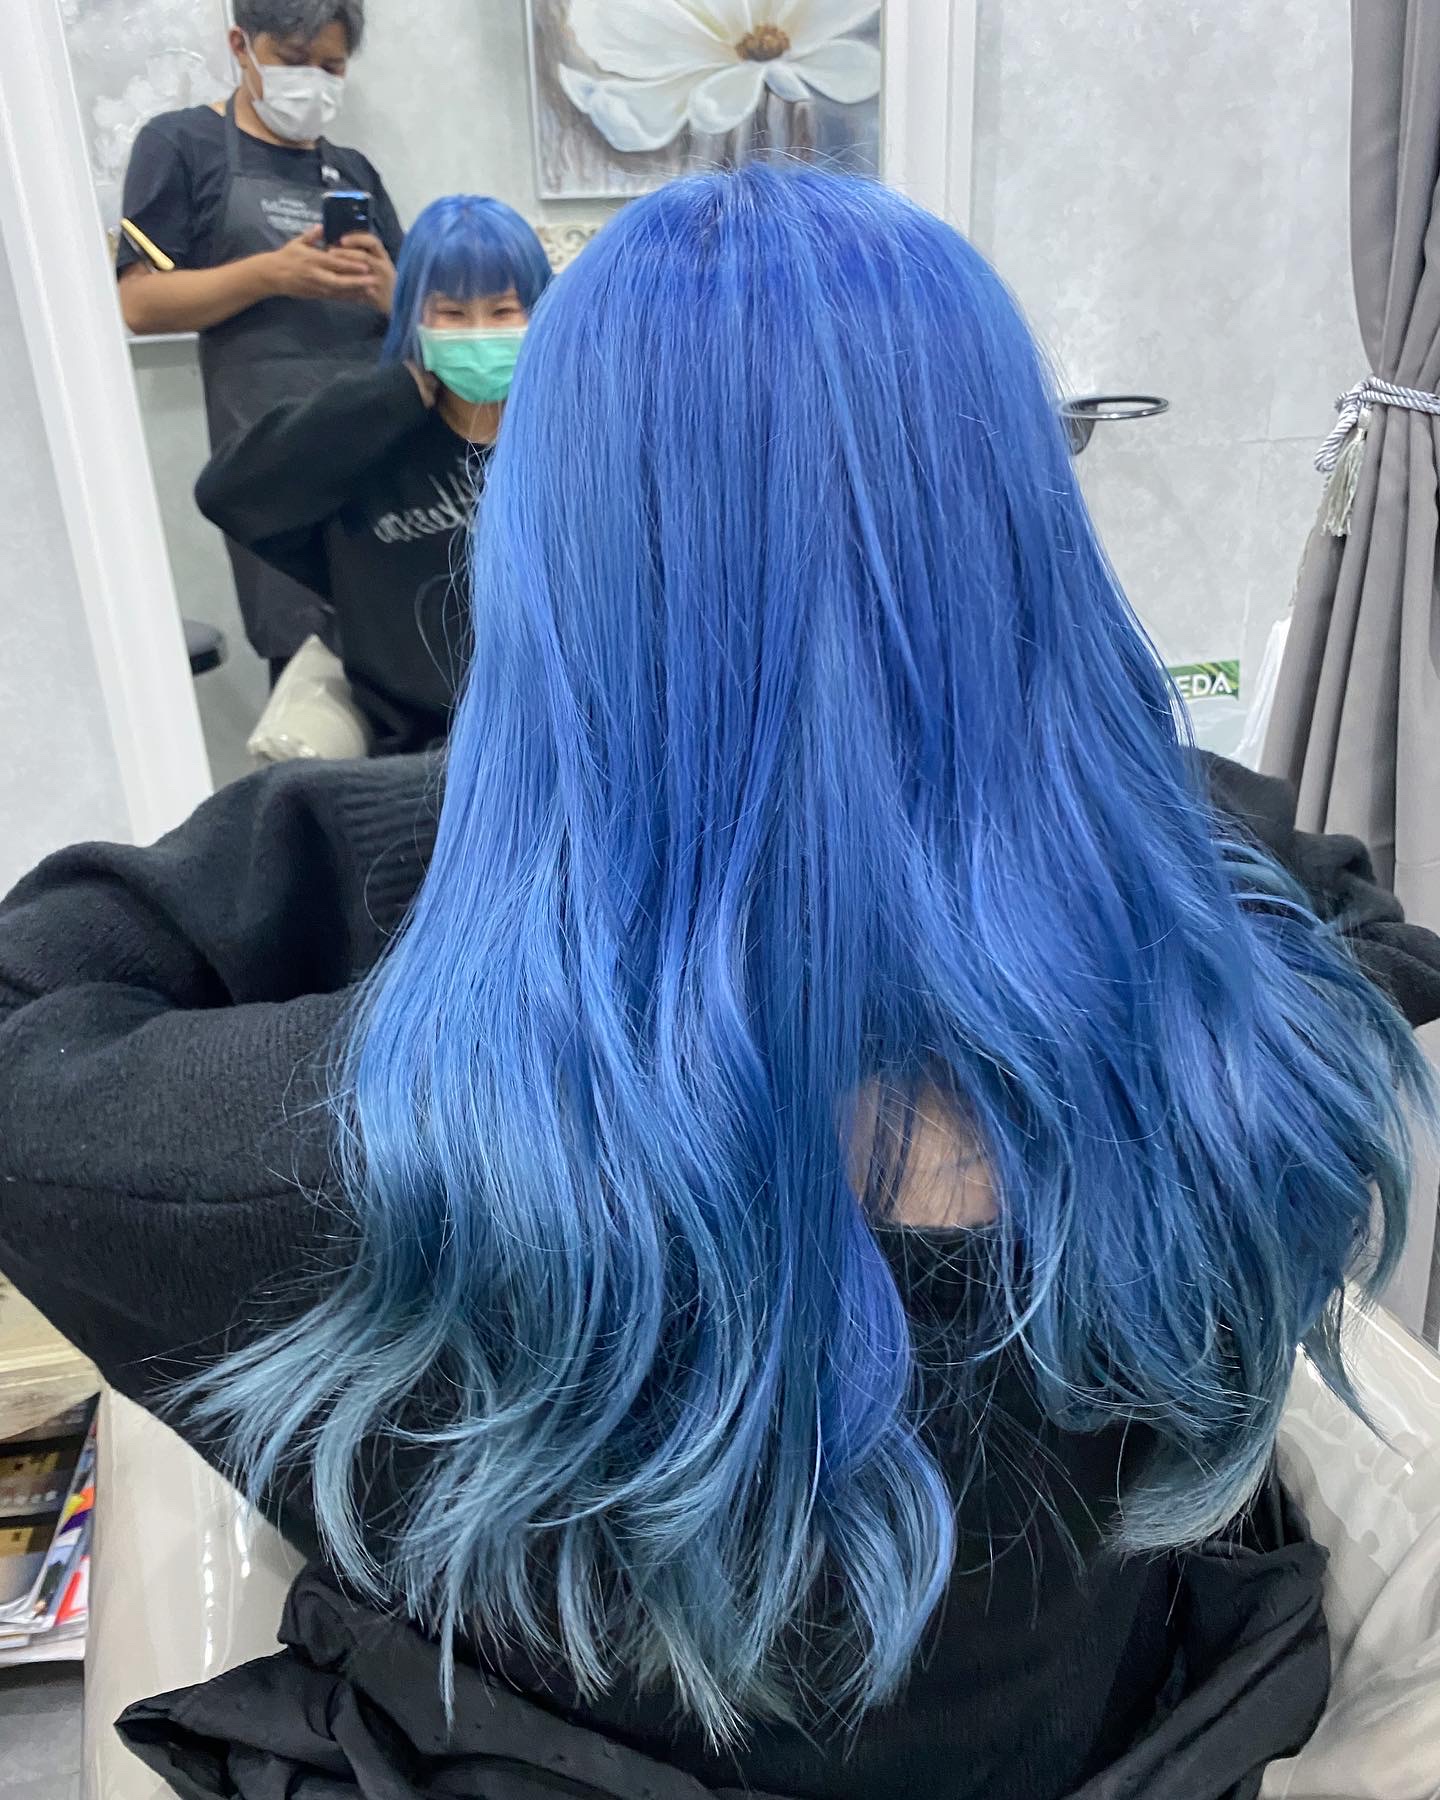 髮型作品參考:藍